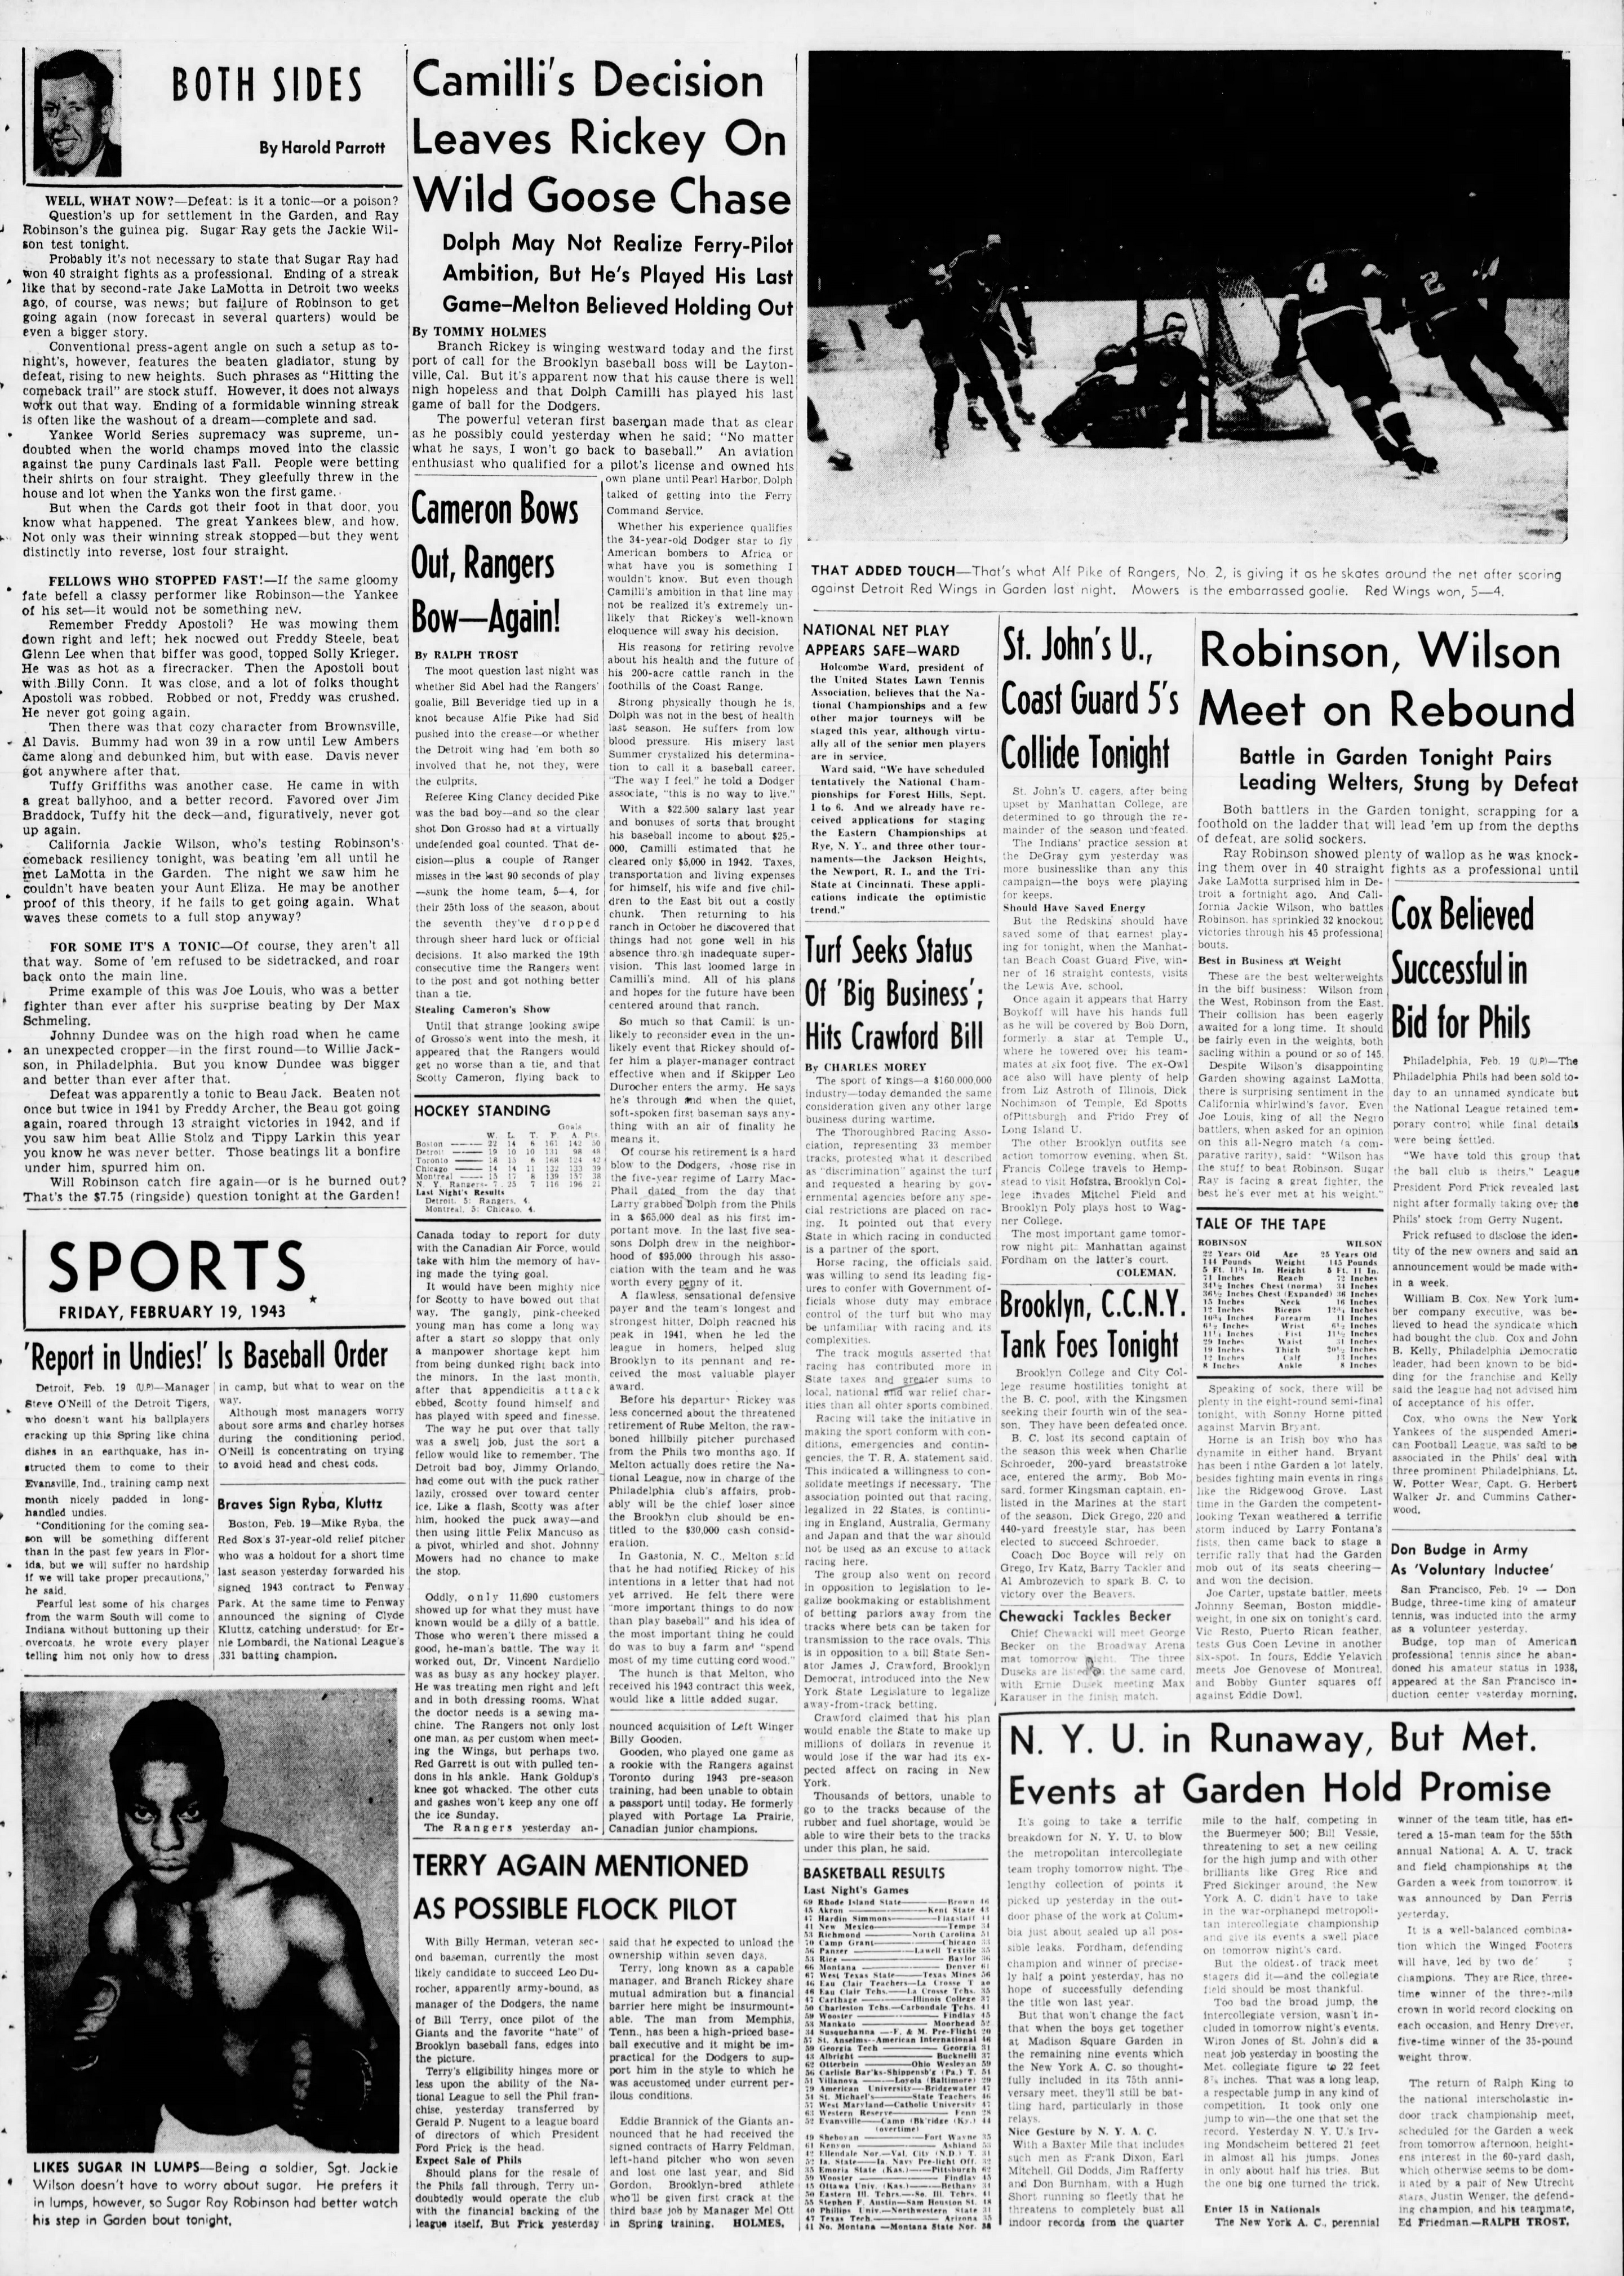 The_Brooklyn_Daily_Eagle_Fri__Feb_19__1943_(4).jpg